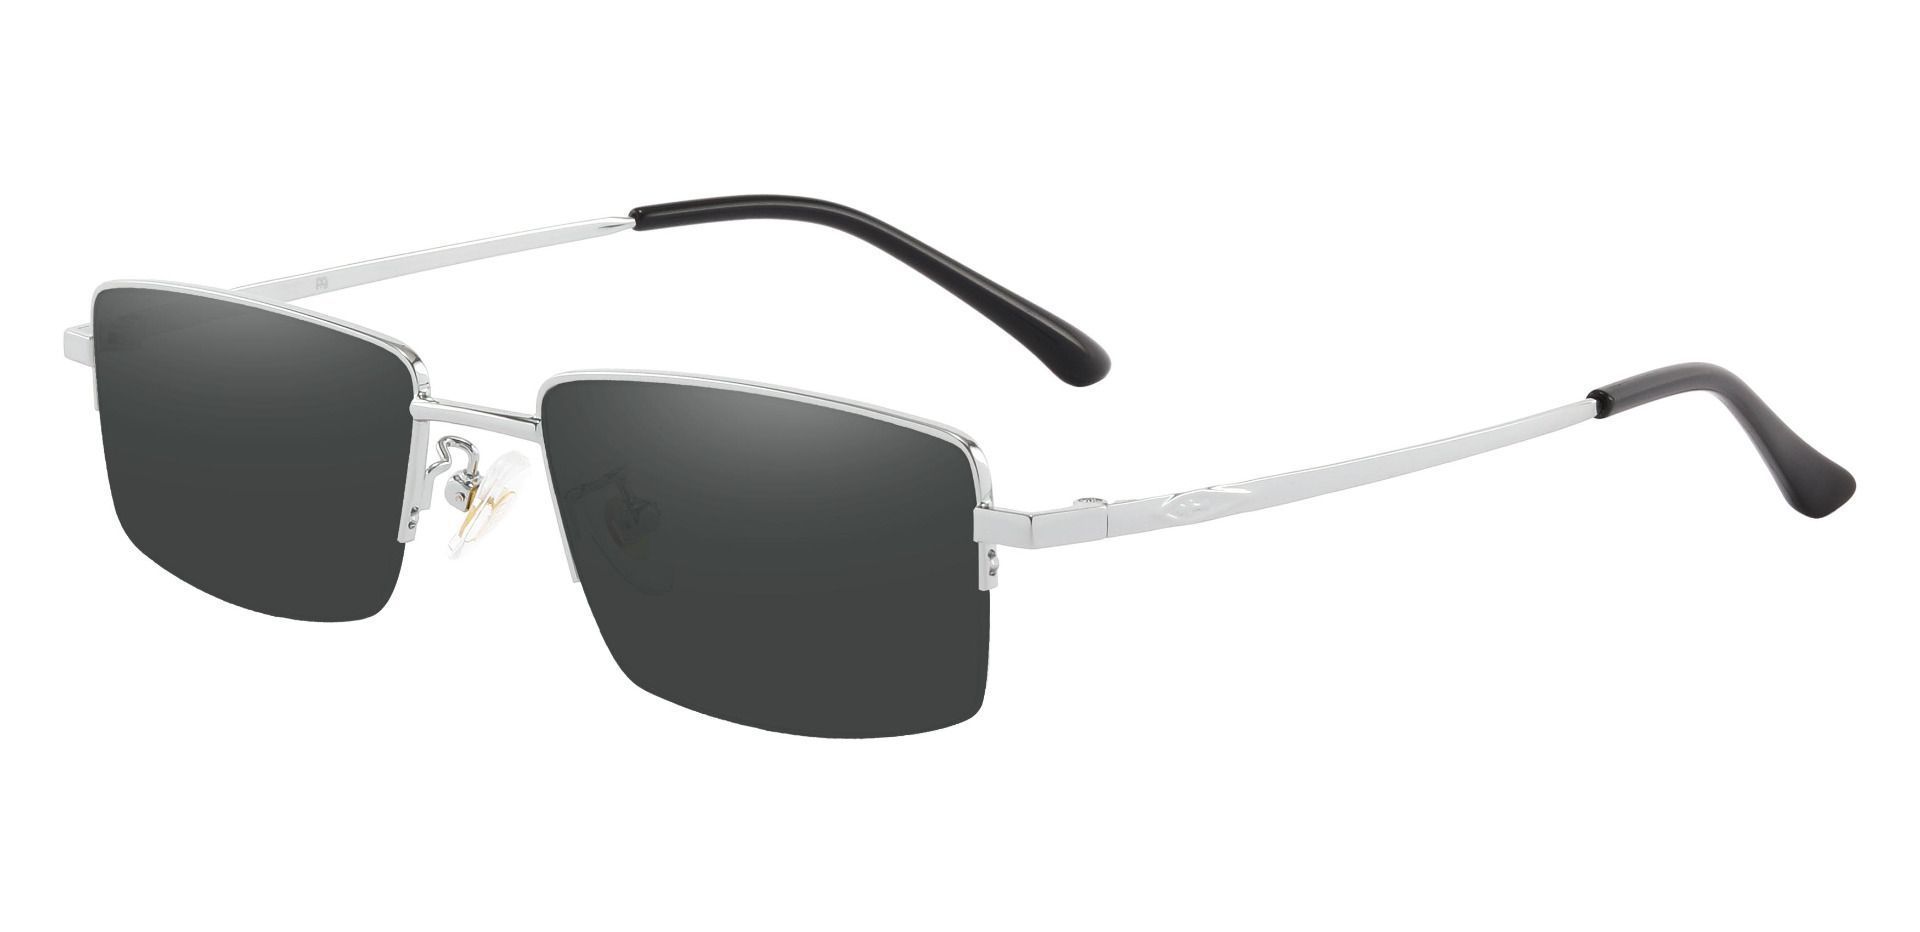 Waldo Rectangle Non-Rx Sunglasses - Silver Frame With Gray Lenses